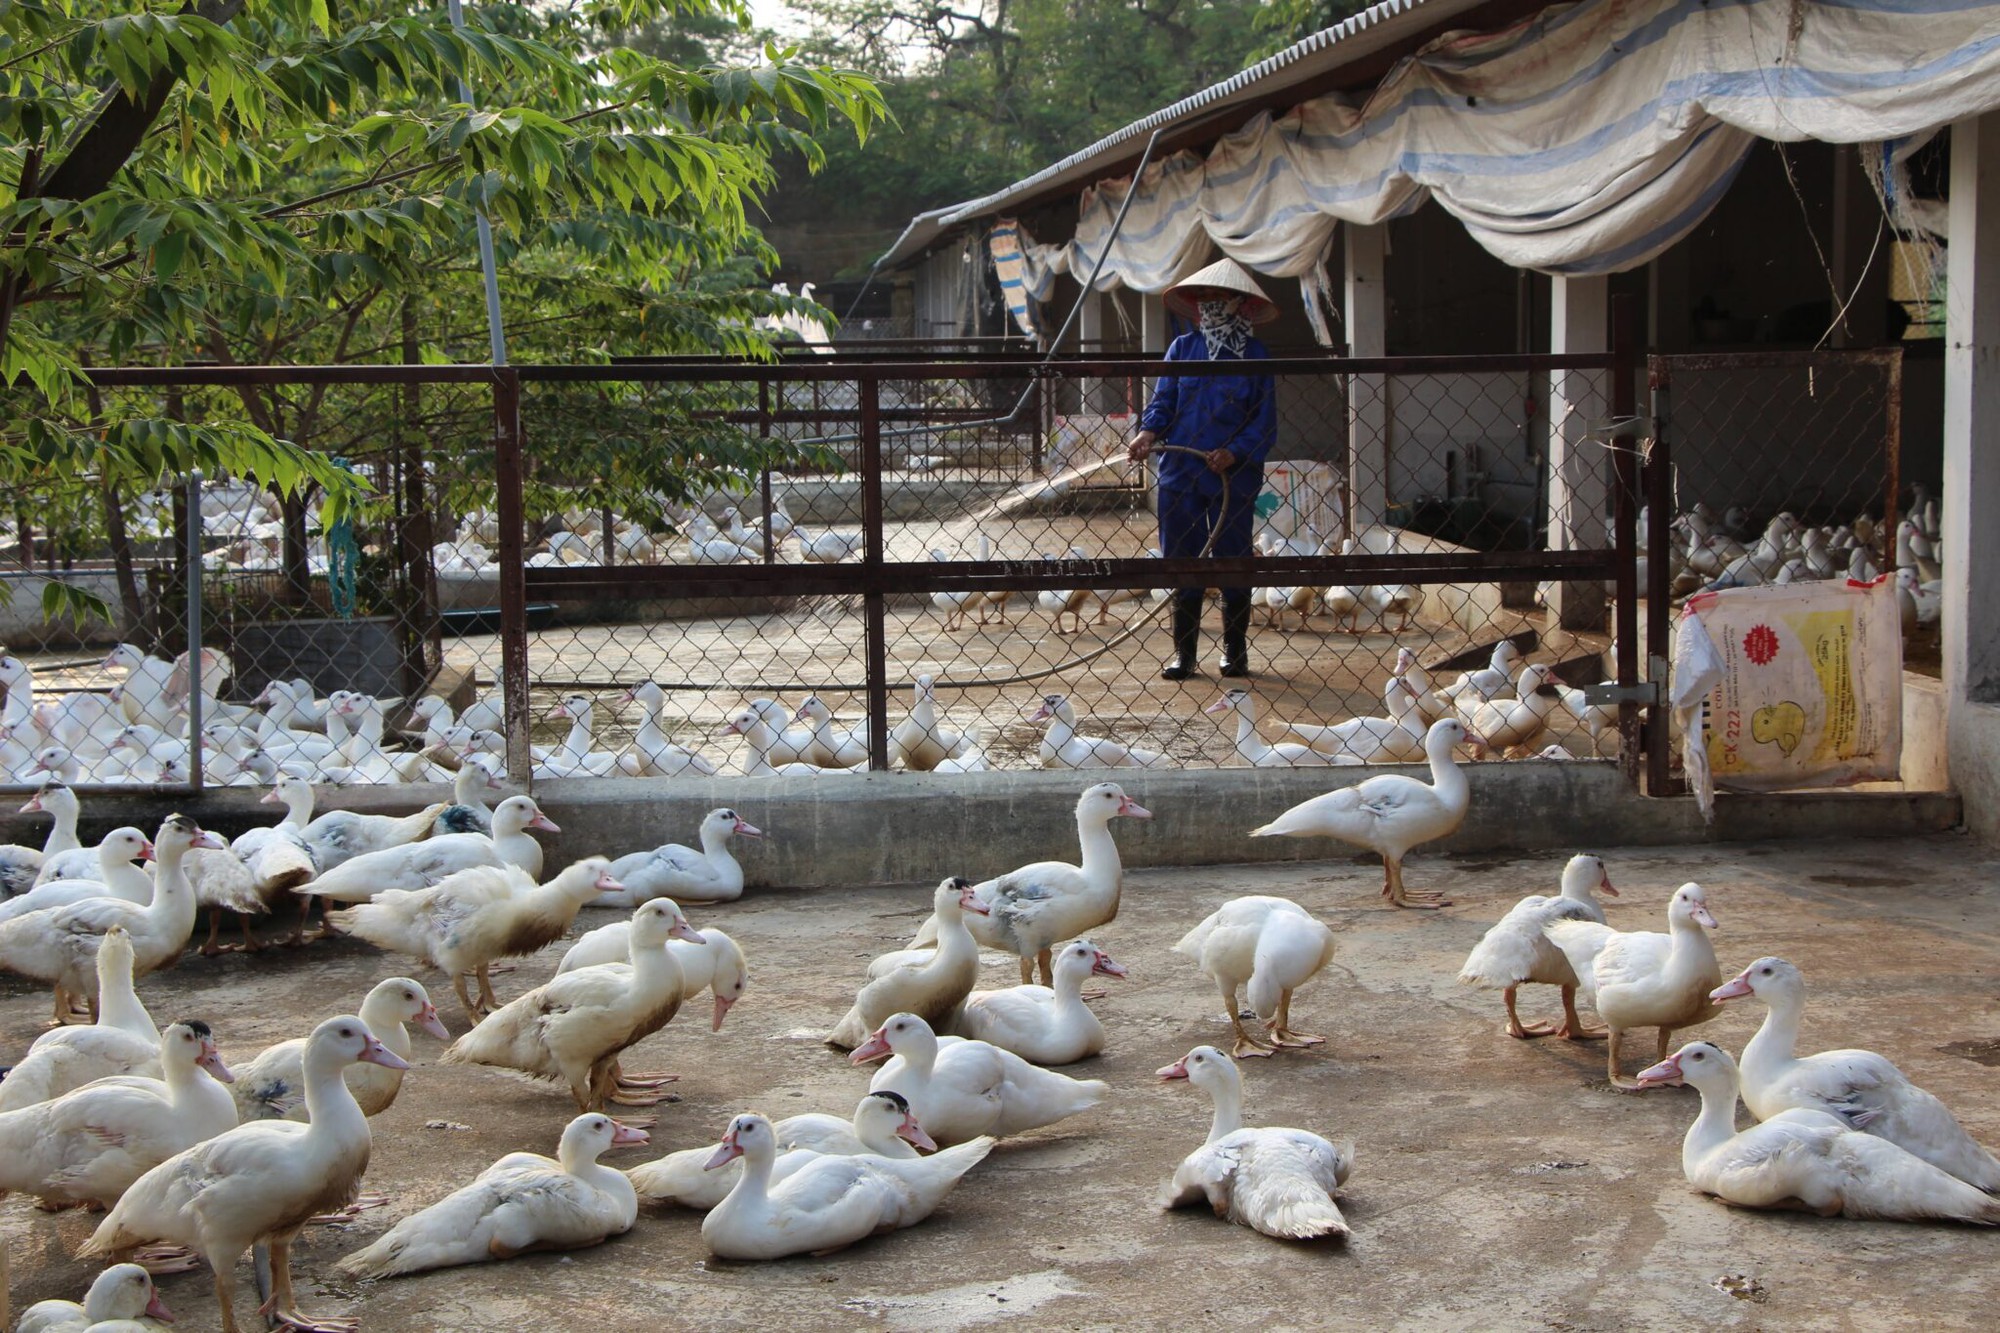 Khoa học công nghệ giúp giảm giá thành chăn nuôi gà công nghiệp còn dưới 1 USD/kg - Ảnh 3.